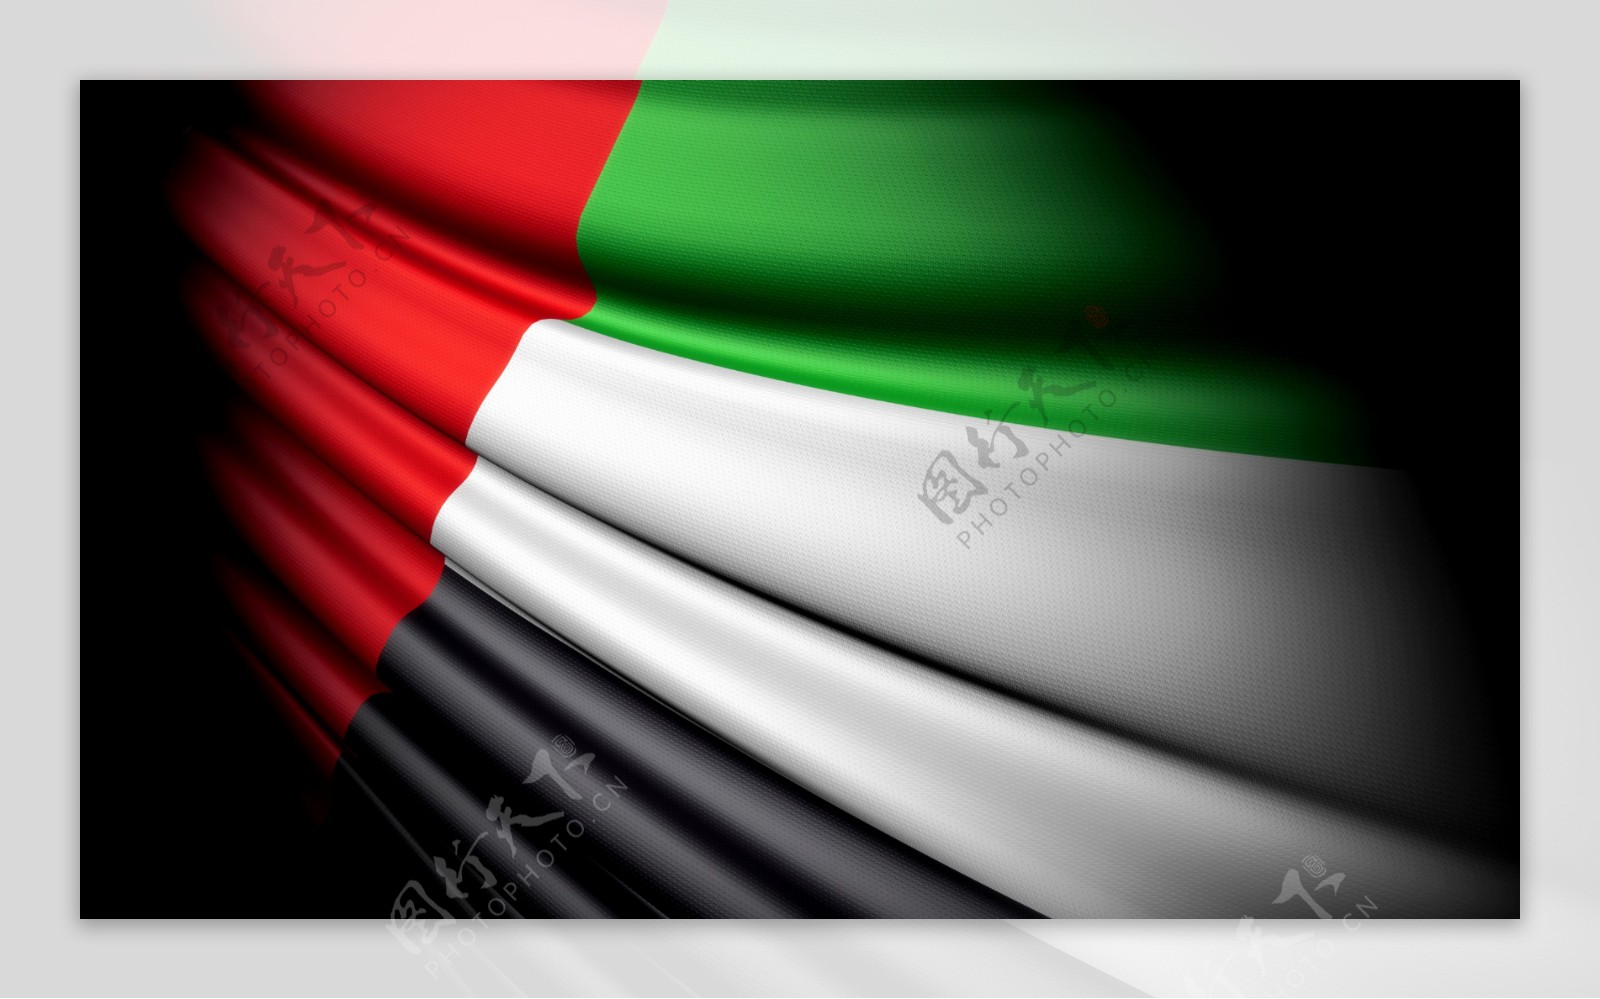 阿拉伯联合酋长国国旗图片